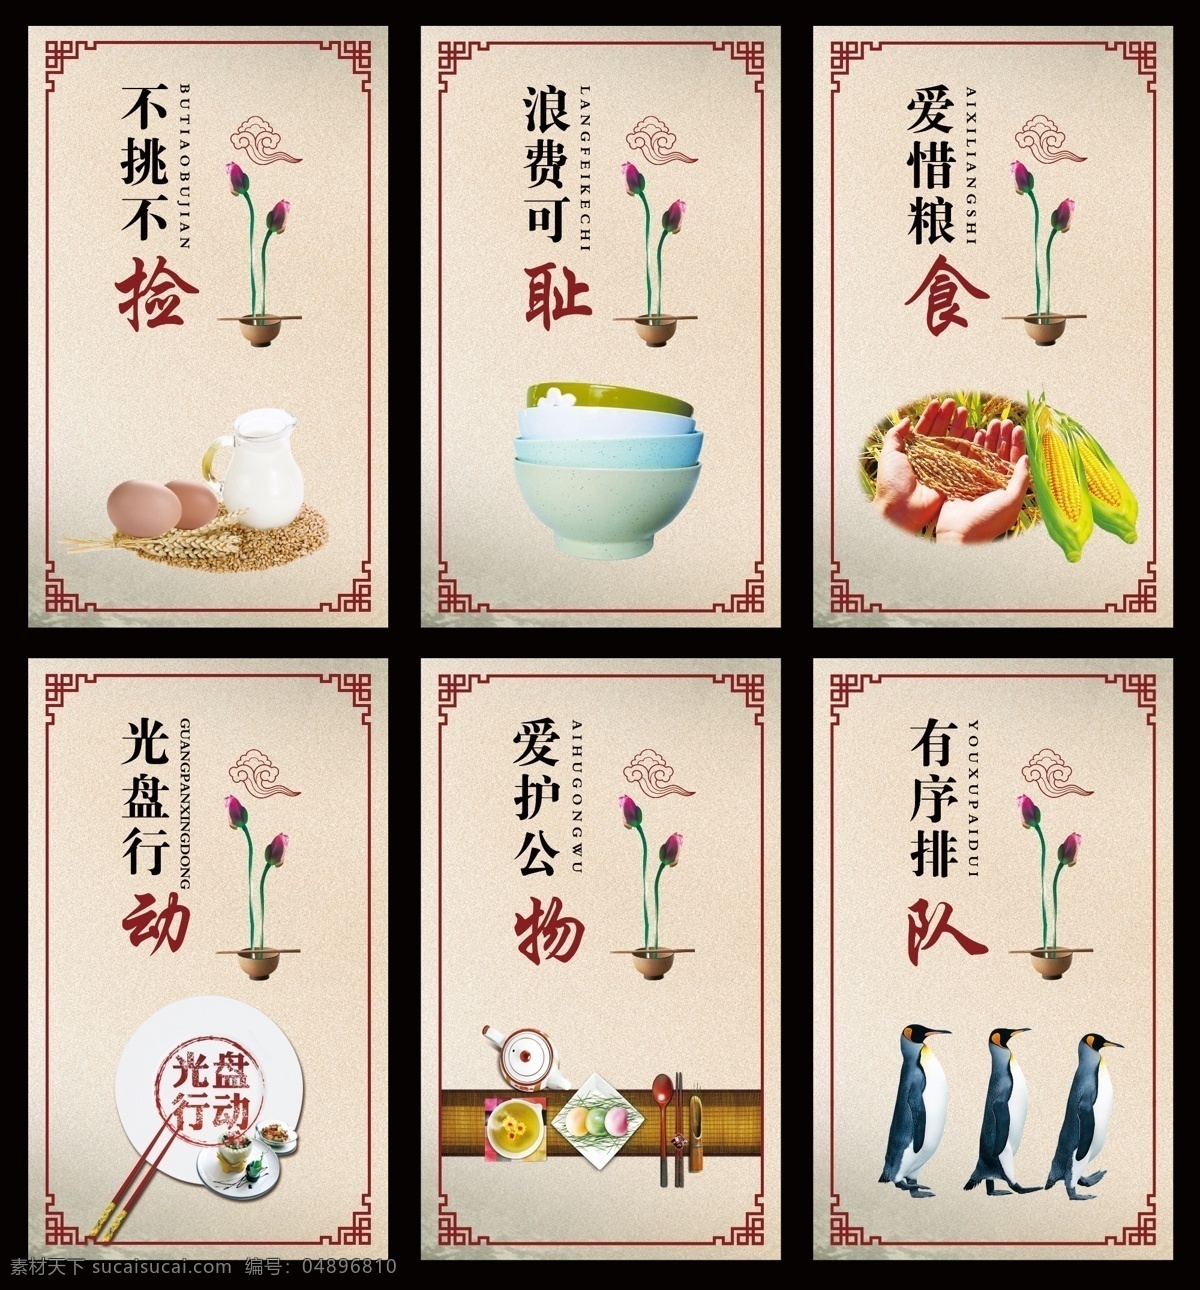 餐厅文化 餐厅 饮食 文化 psd分层 徐娜专辑 展板模板